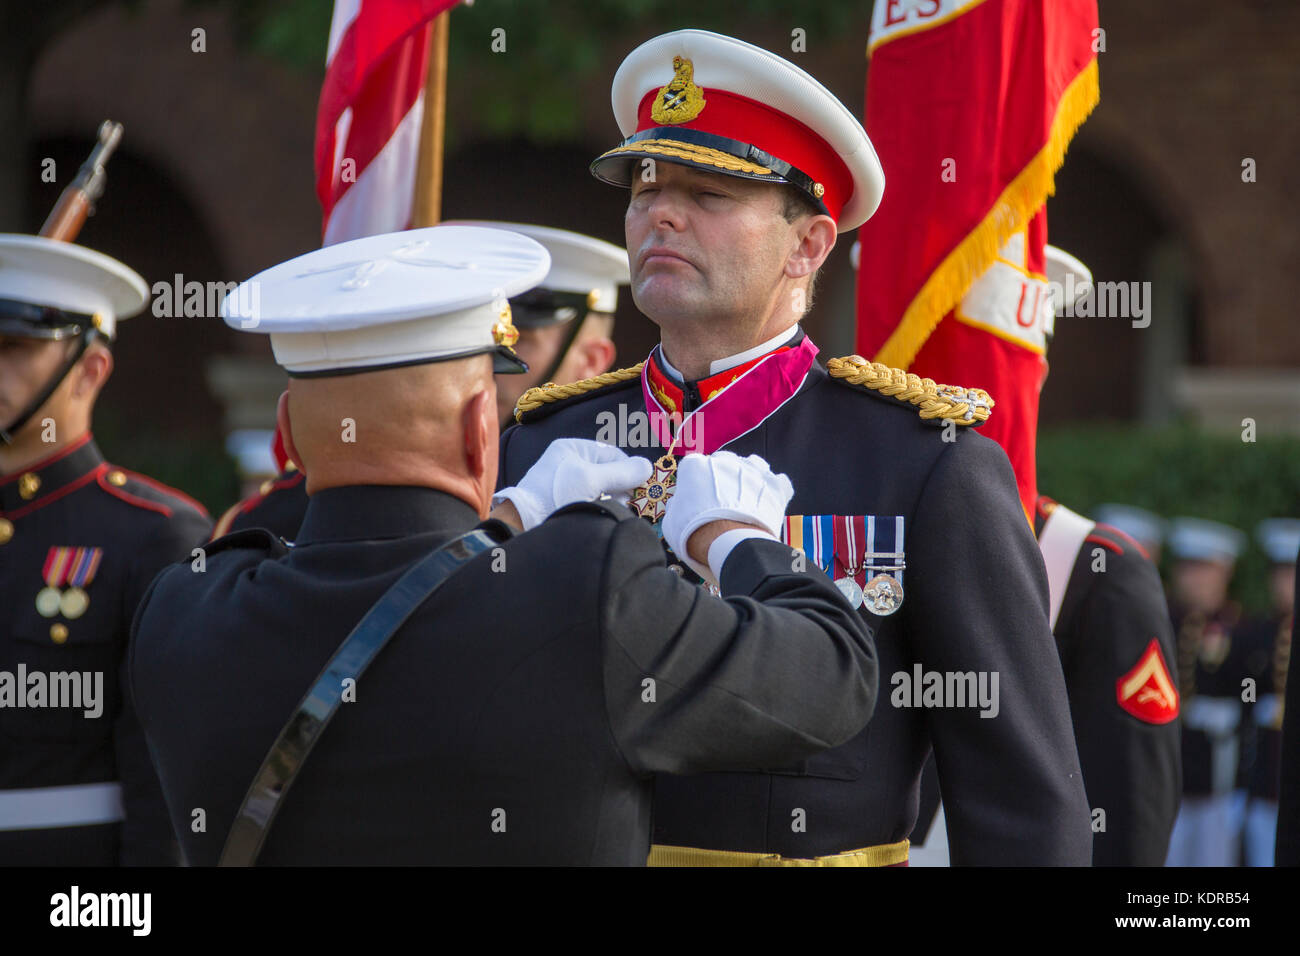 El comandante del Cuerpo de Infantería de Marina de EE.UU. Robert neller premios British Royal Marine Corps comandante general Robert magowan la Legión de Mérito durante una ceremonia con honores en el cuartel de los marines en Washington el 10 de octubre de 2017 en Washington, DC. Foto de stock